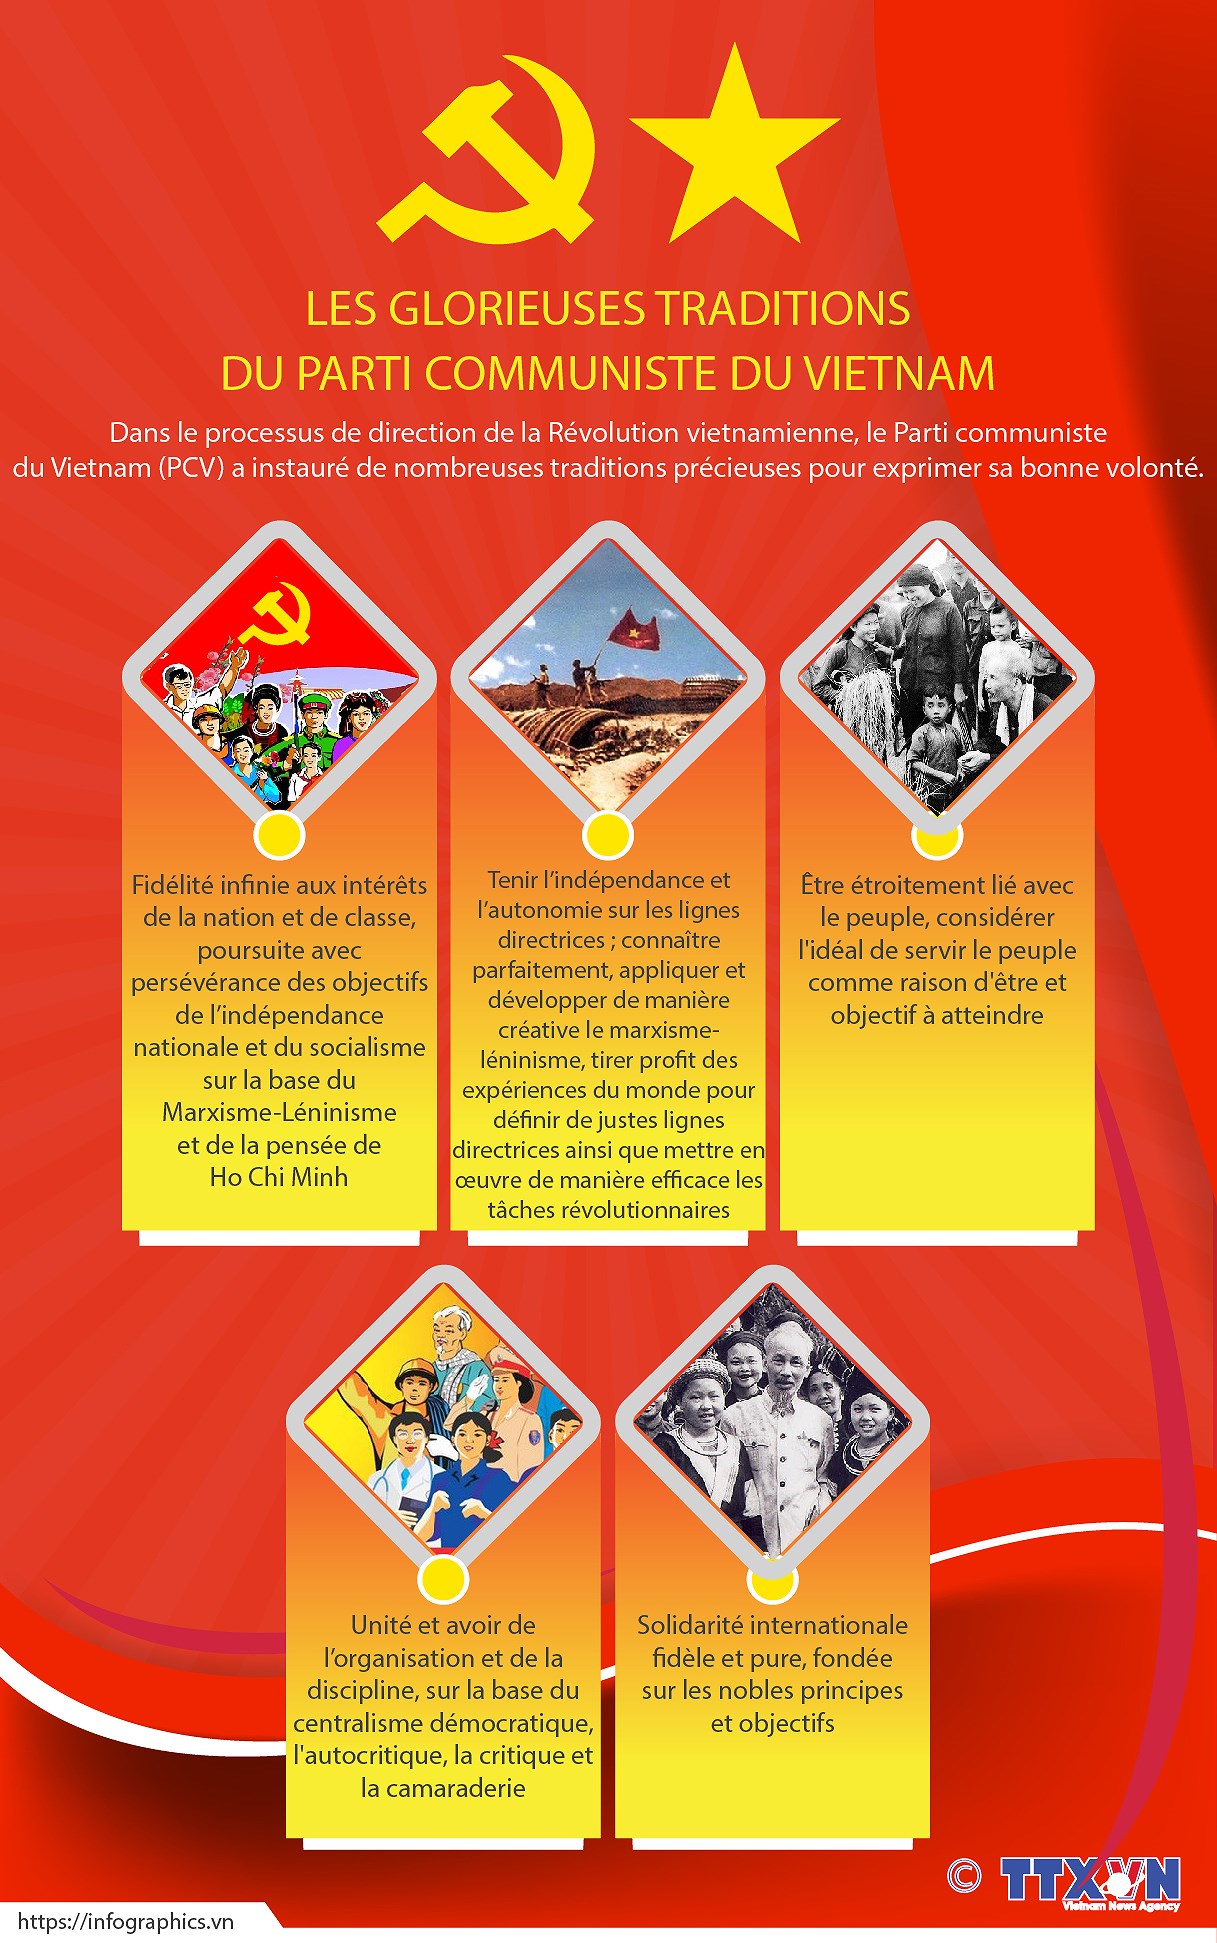 Les glorieuses traditions du Parti communiste du Vietnam hinh anh 1